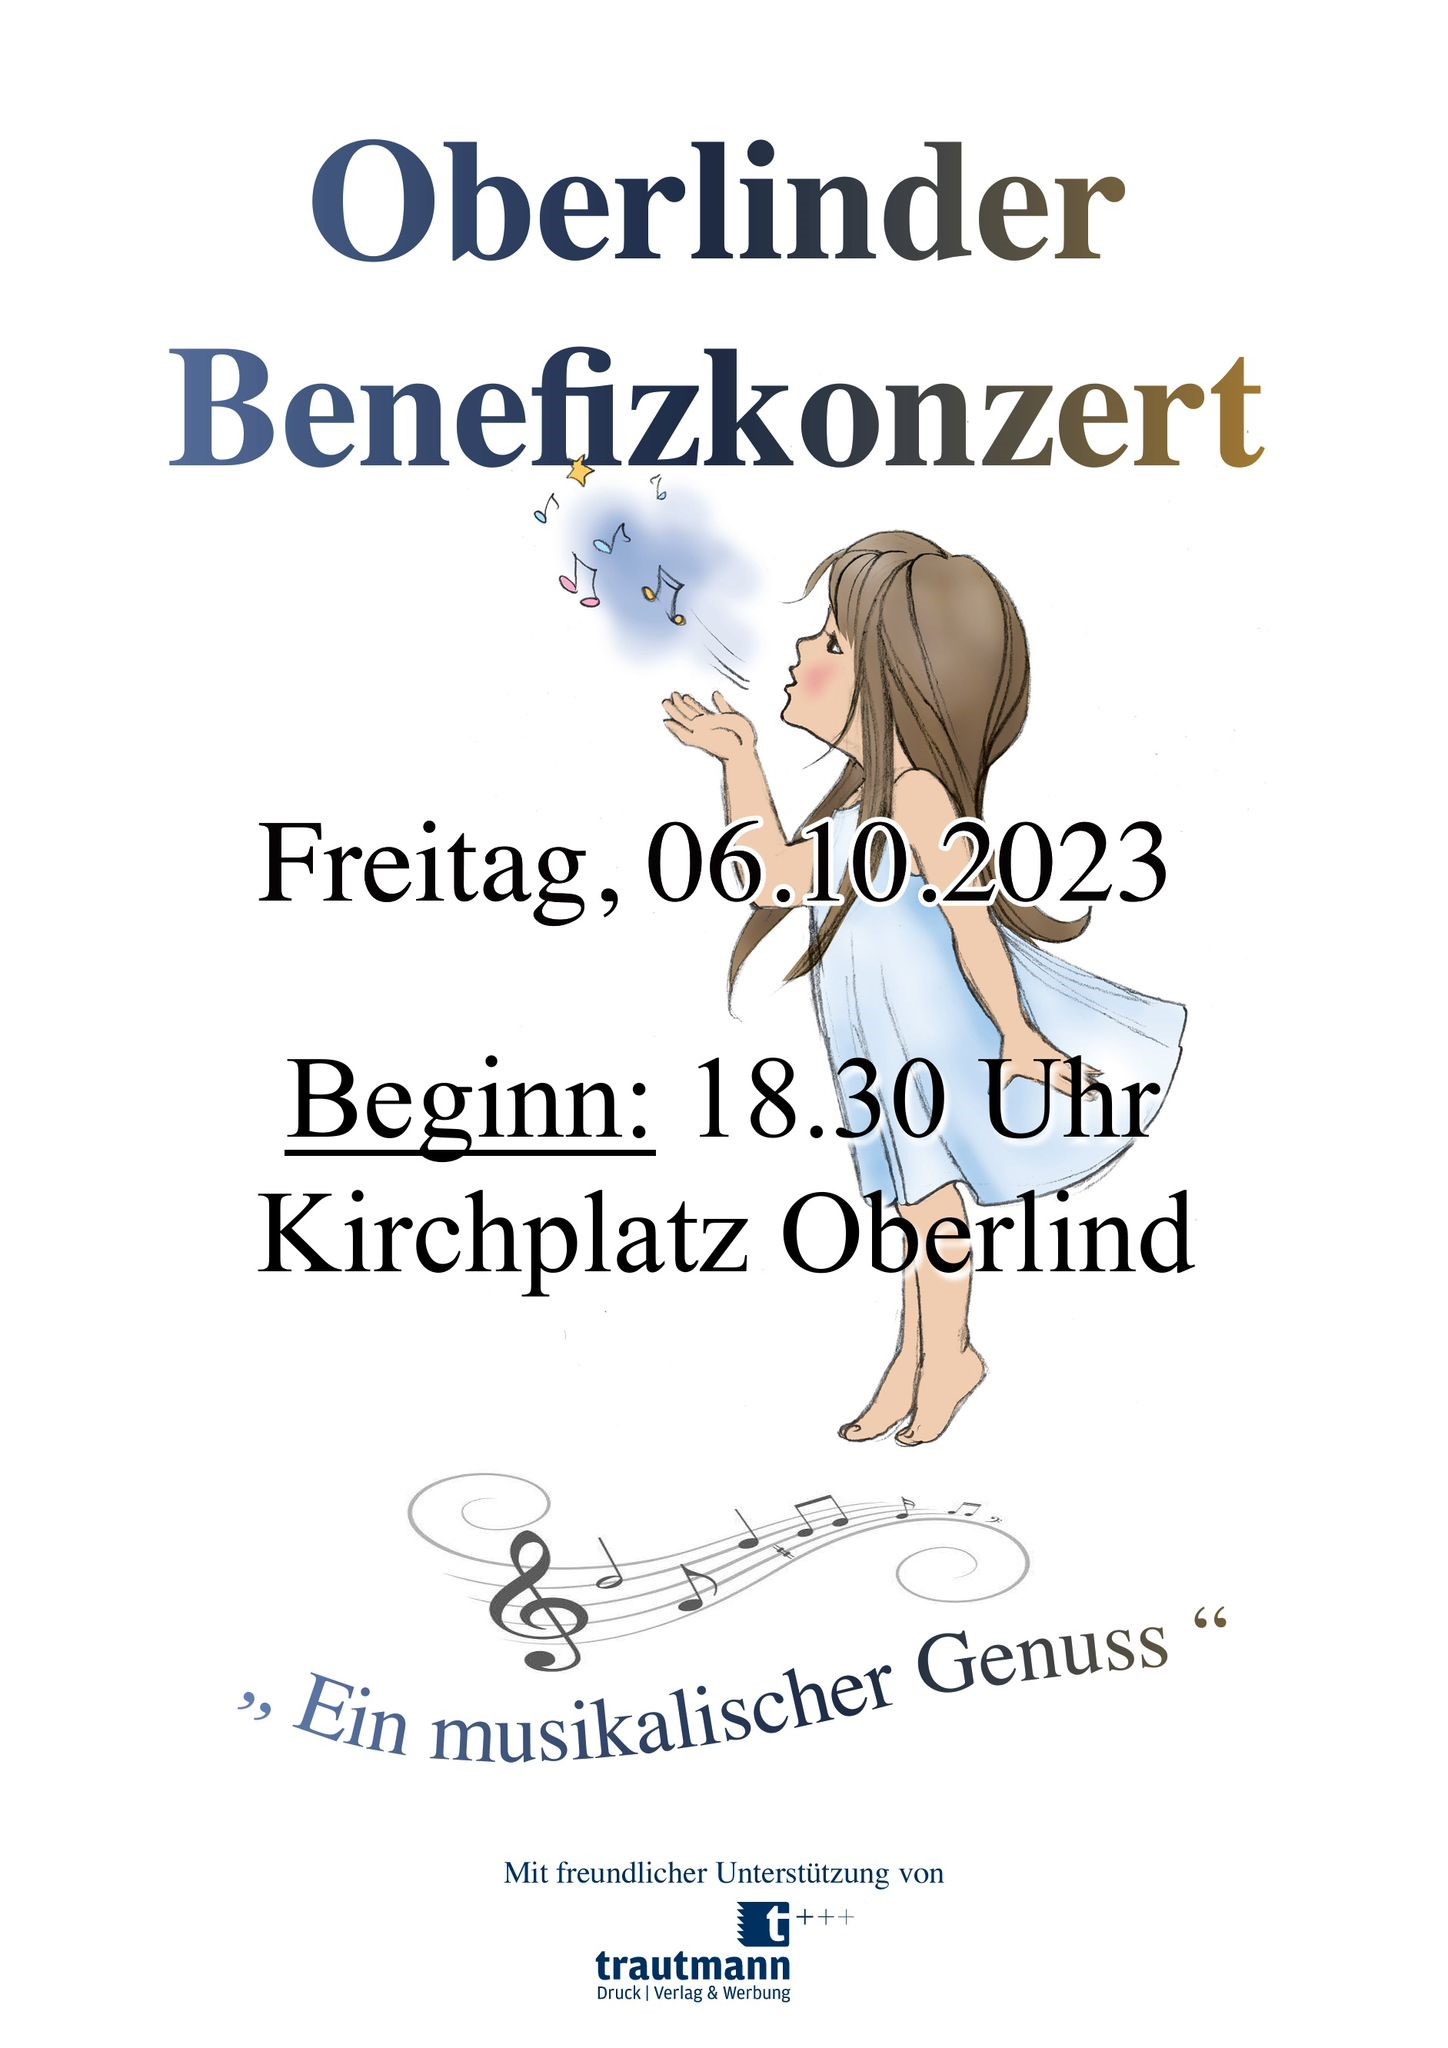 Eine weiße Grafik mit der Aufschrift: Oberlinder Benefizkonzert, Freitag 06.10.2023, Ein musikalischer Genuss.